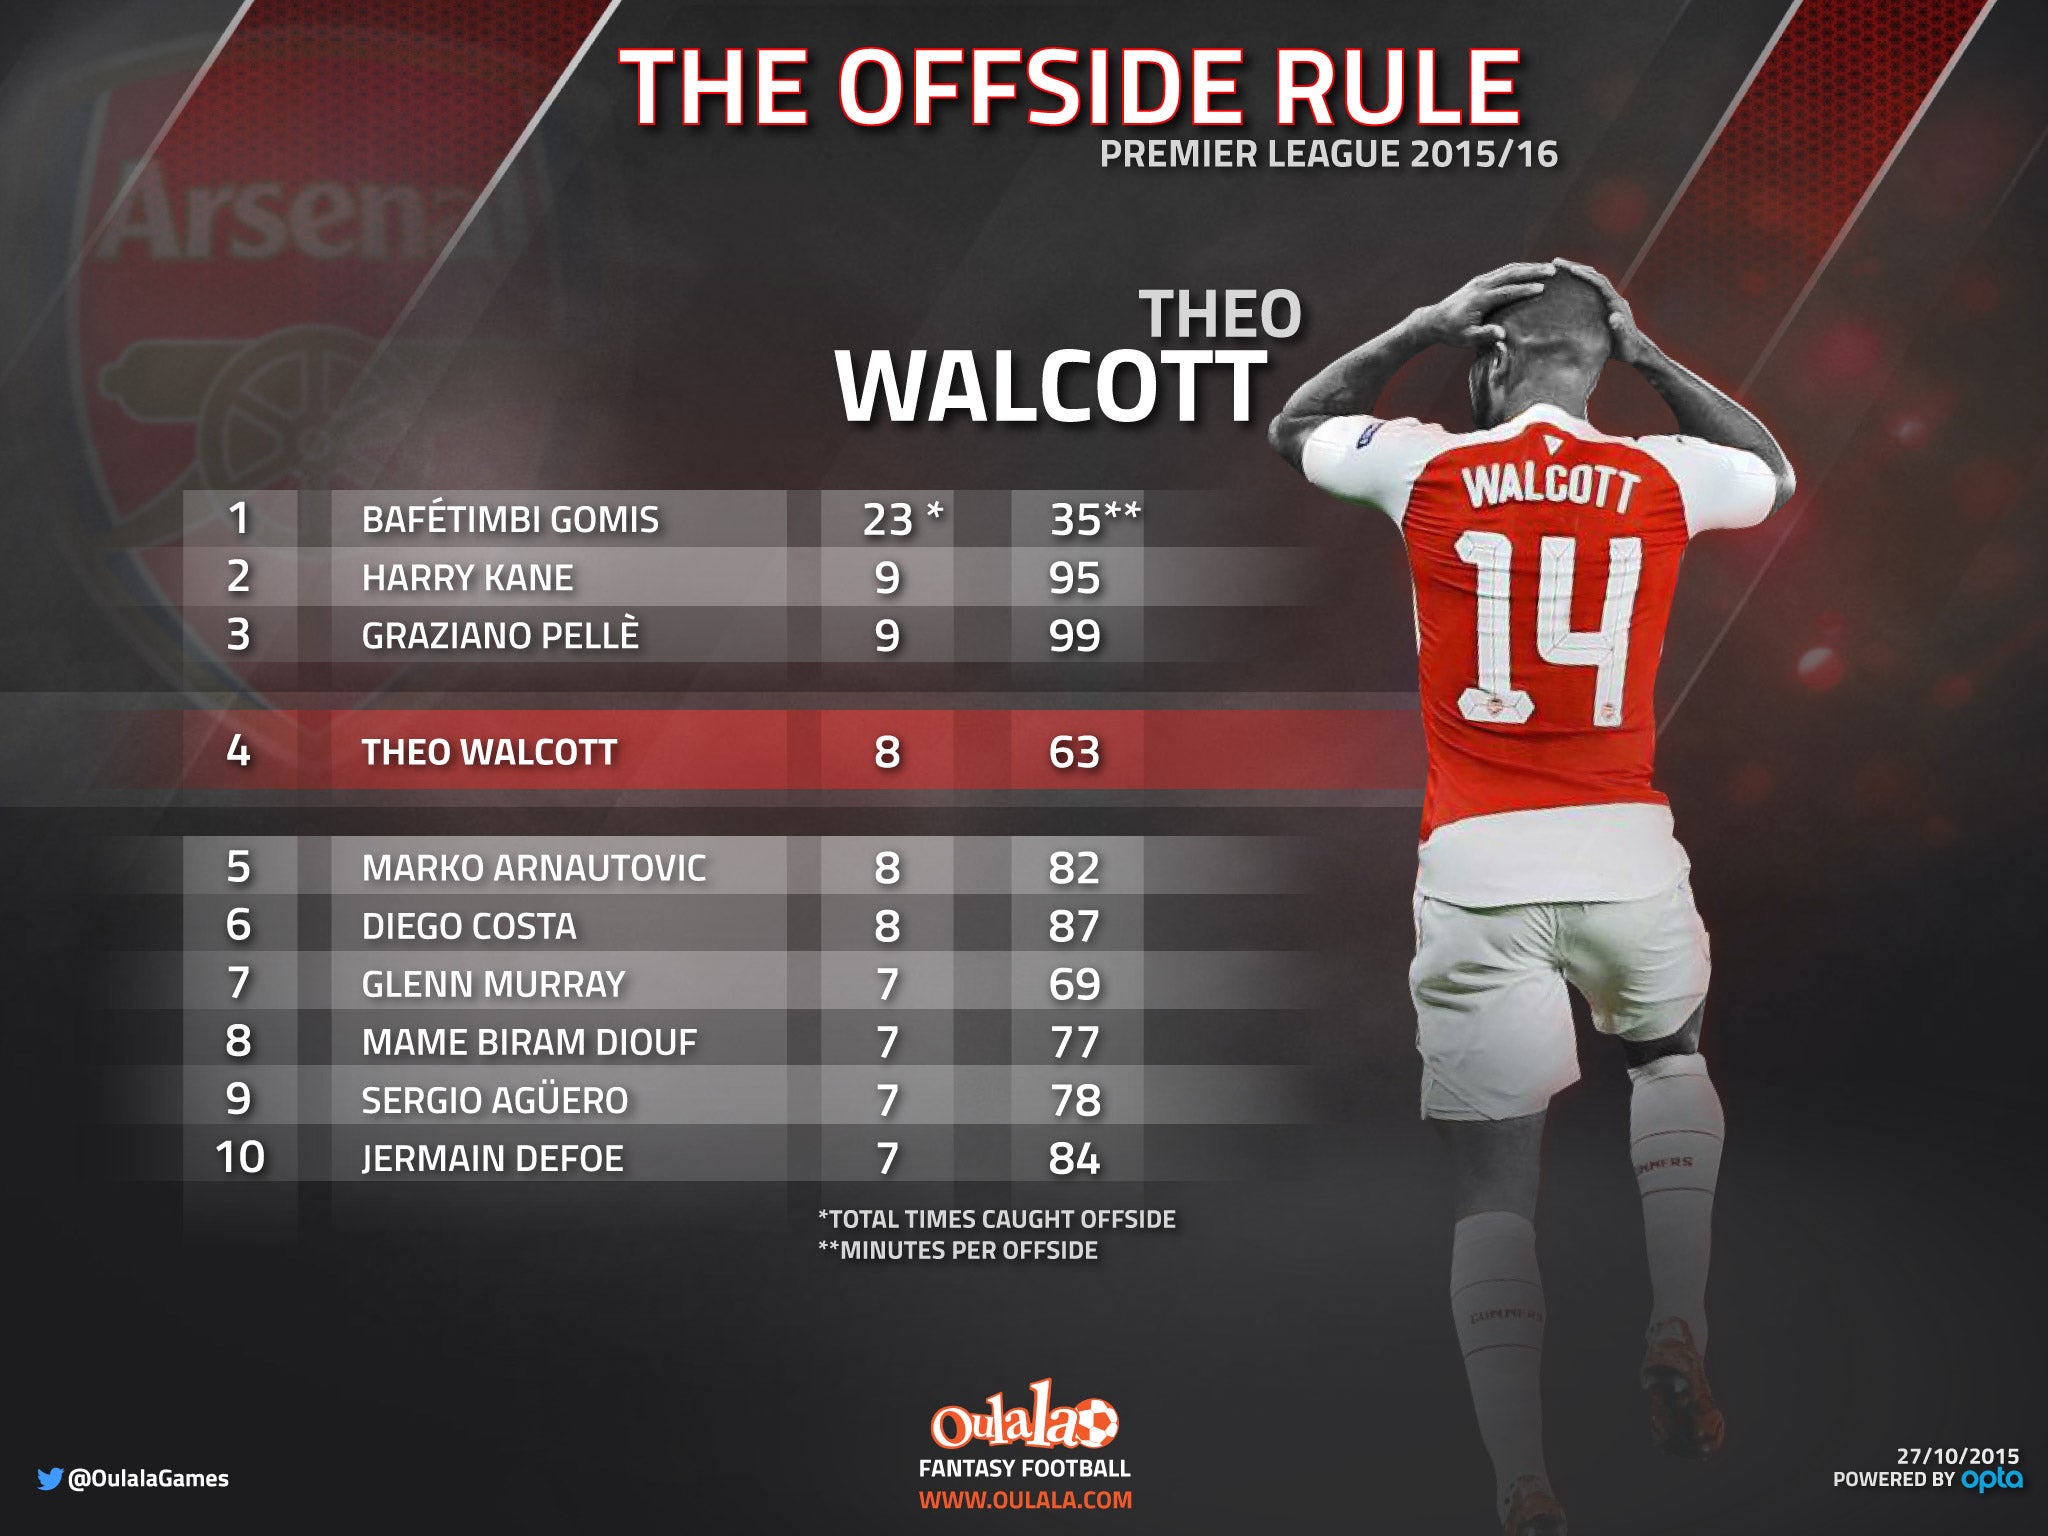 Theo Walcott's offside record